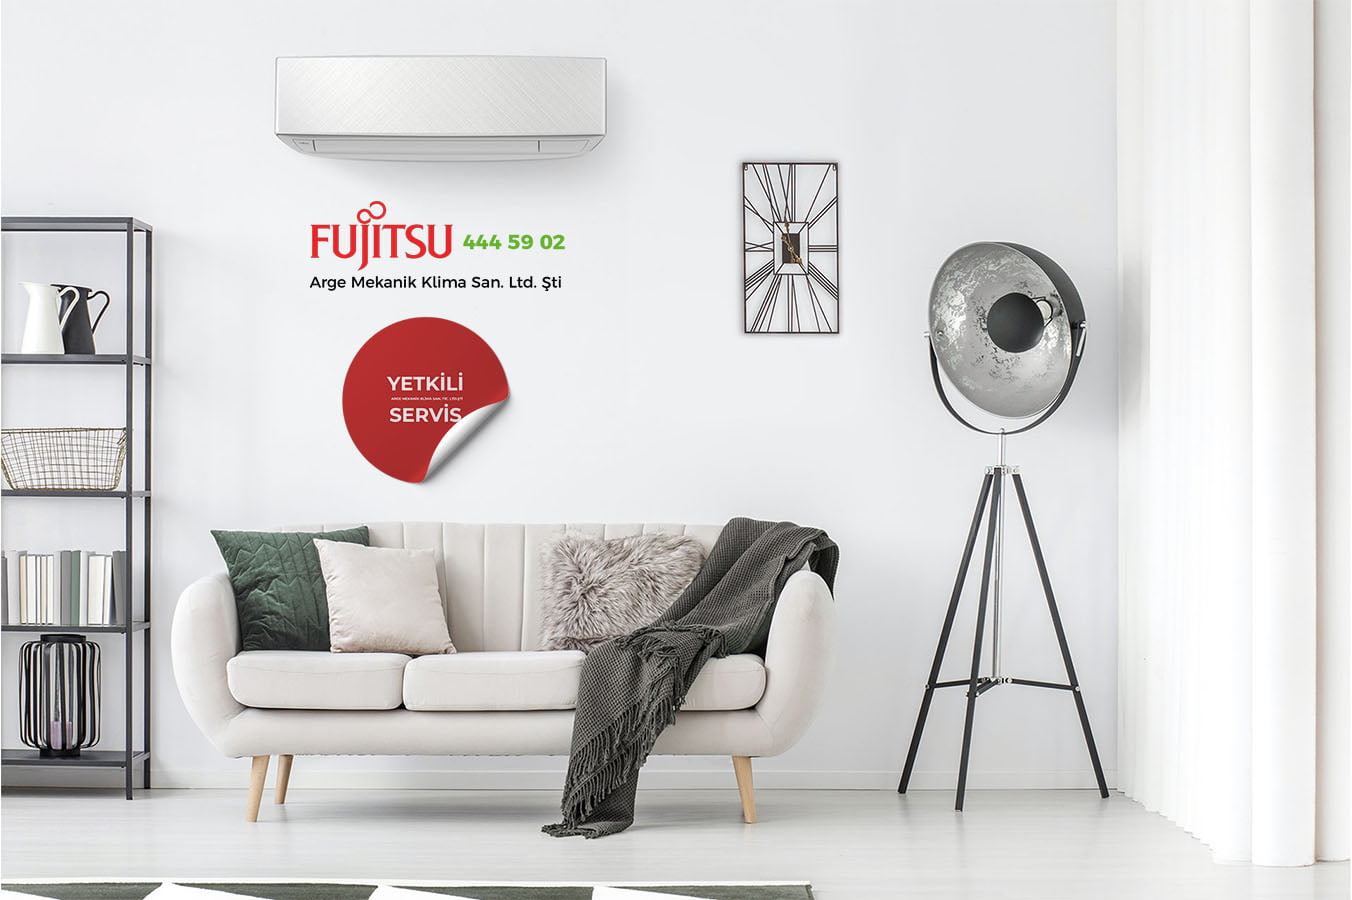 Fujitsu Klima Fiyatları